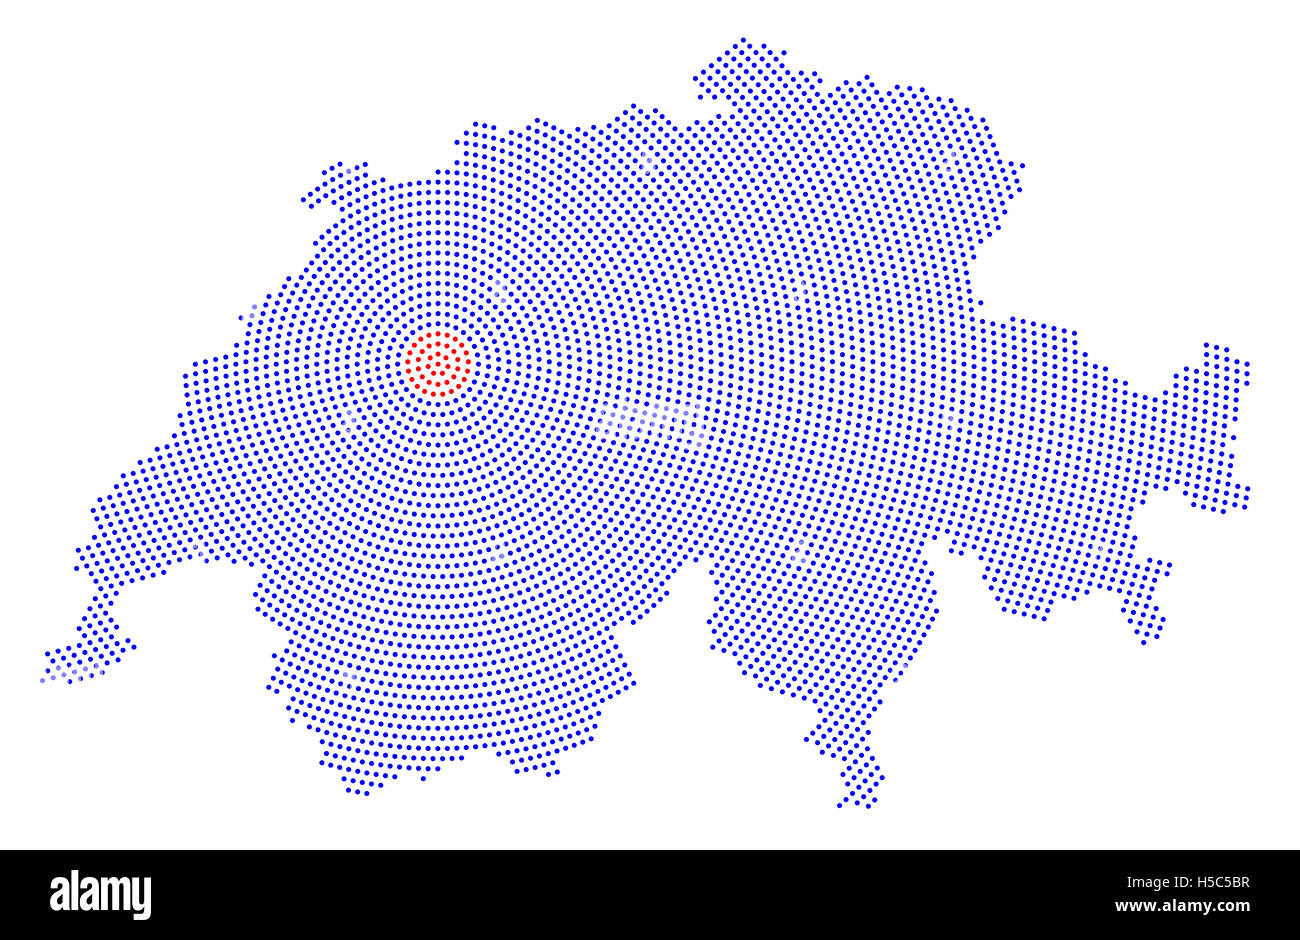 Schweiz-Karte radial Punktmuster. Blaue Punkte gehen von den roten gepunkteten Hauptstadt Bern nach außen und bilden die Land-Silhouette. Stockfoto